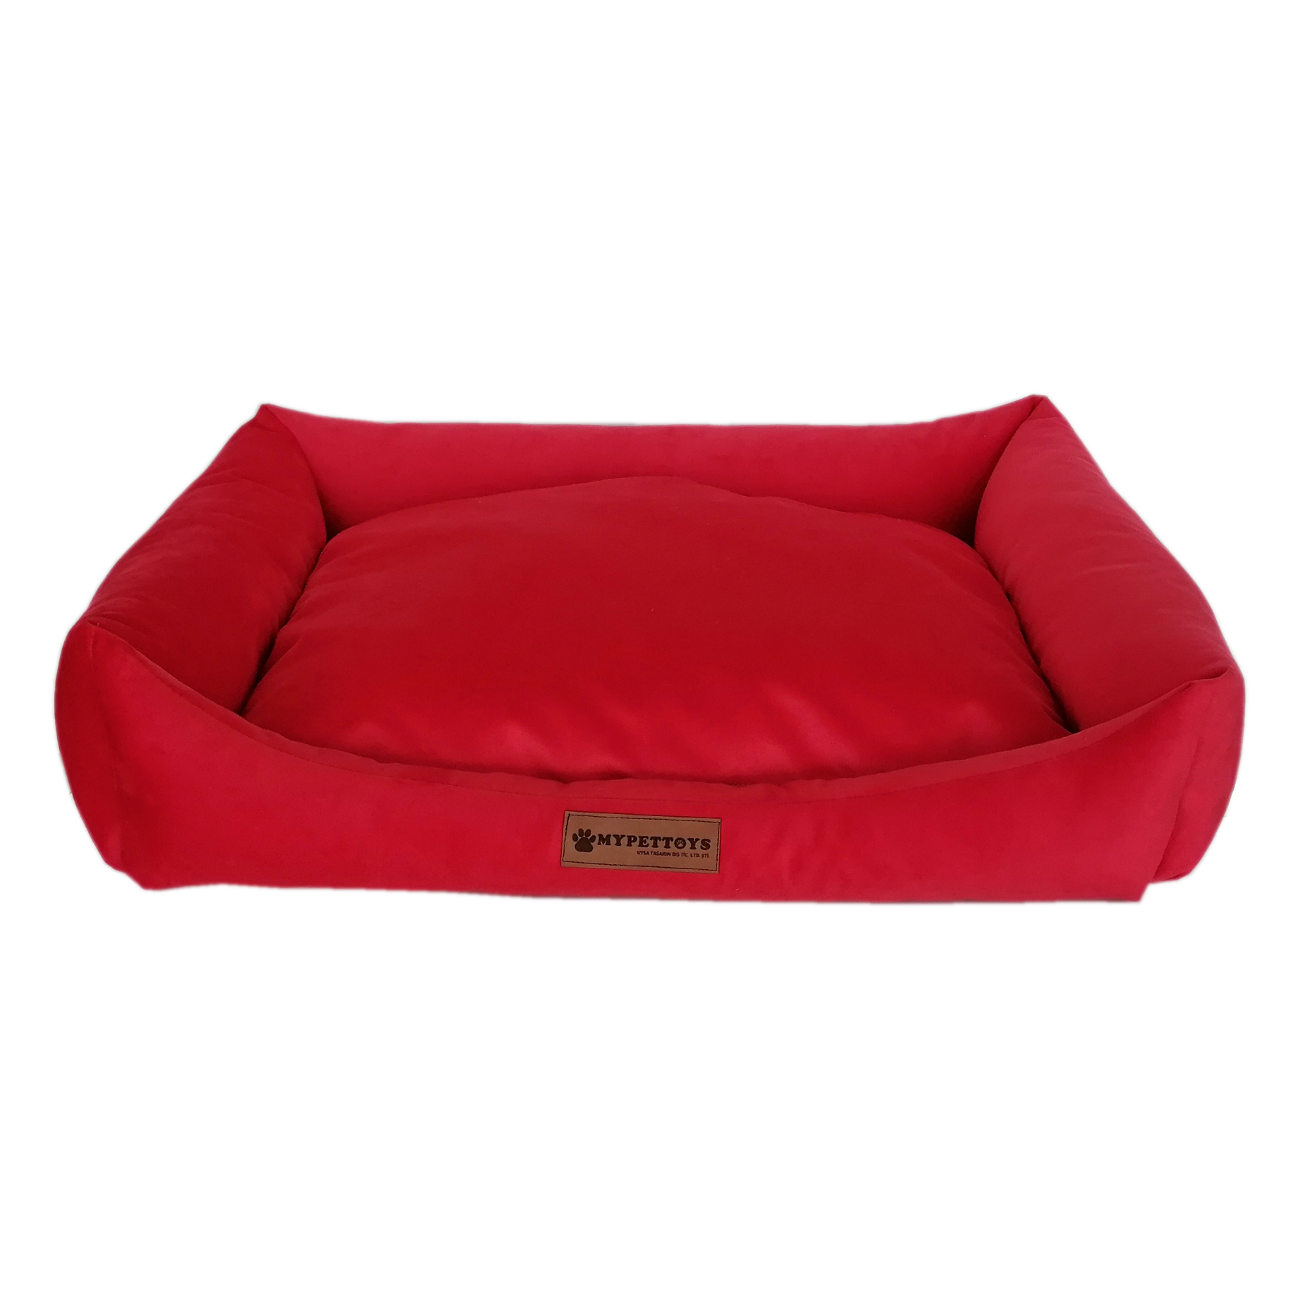 Tay Tüyü Yumuşak Köpek Yatağı Large Kırmızı 60*80 cm